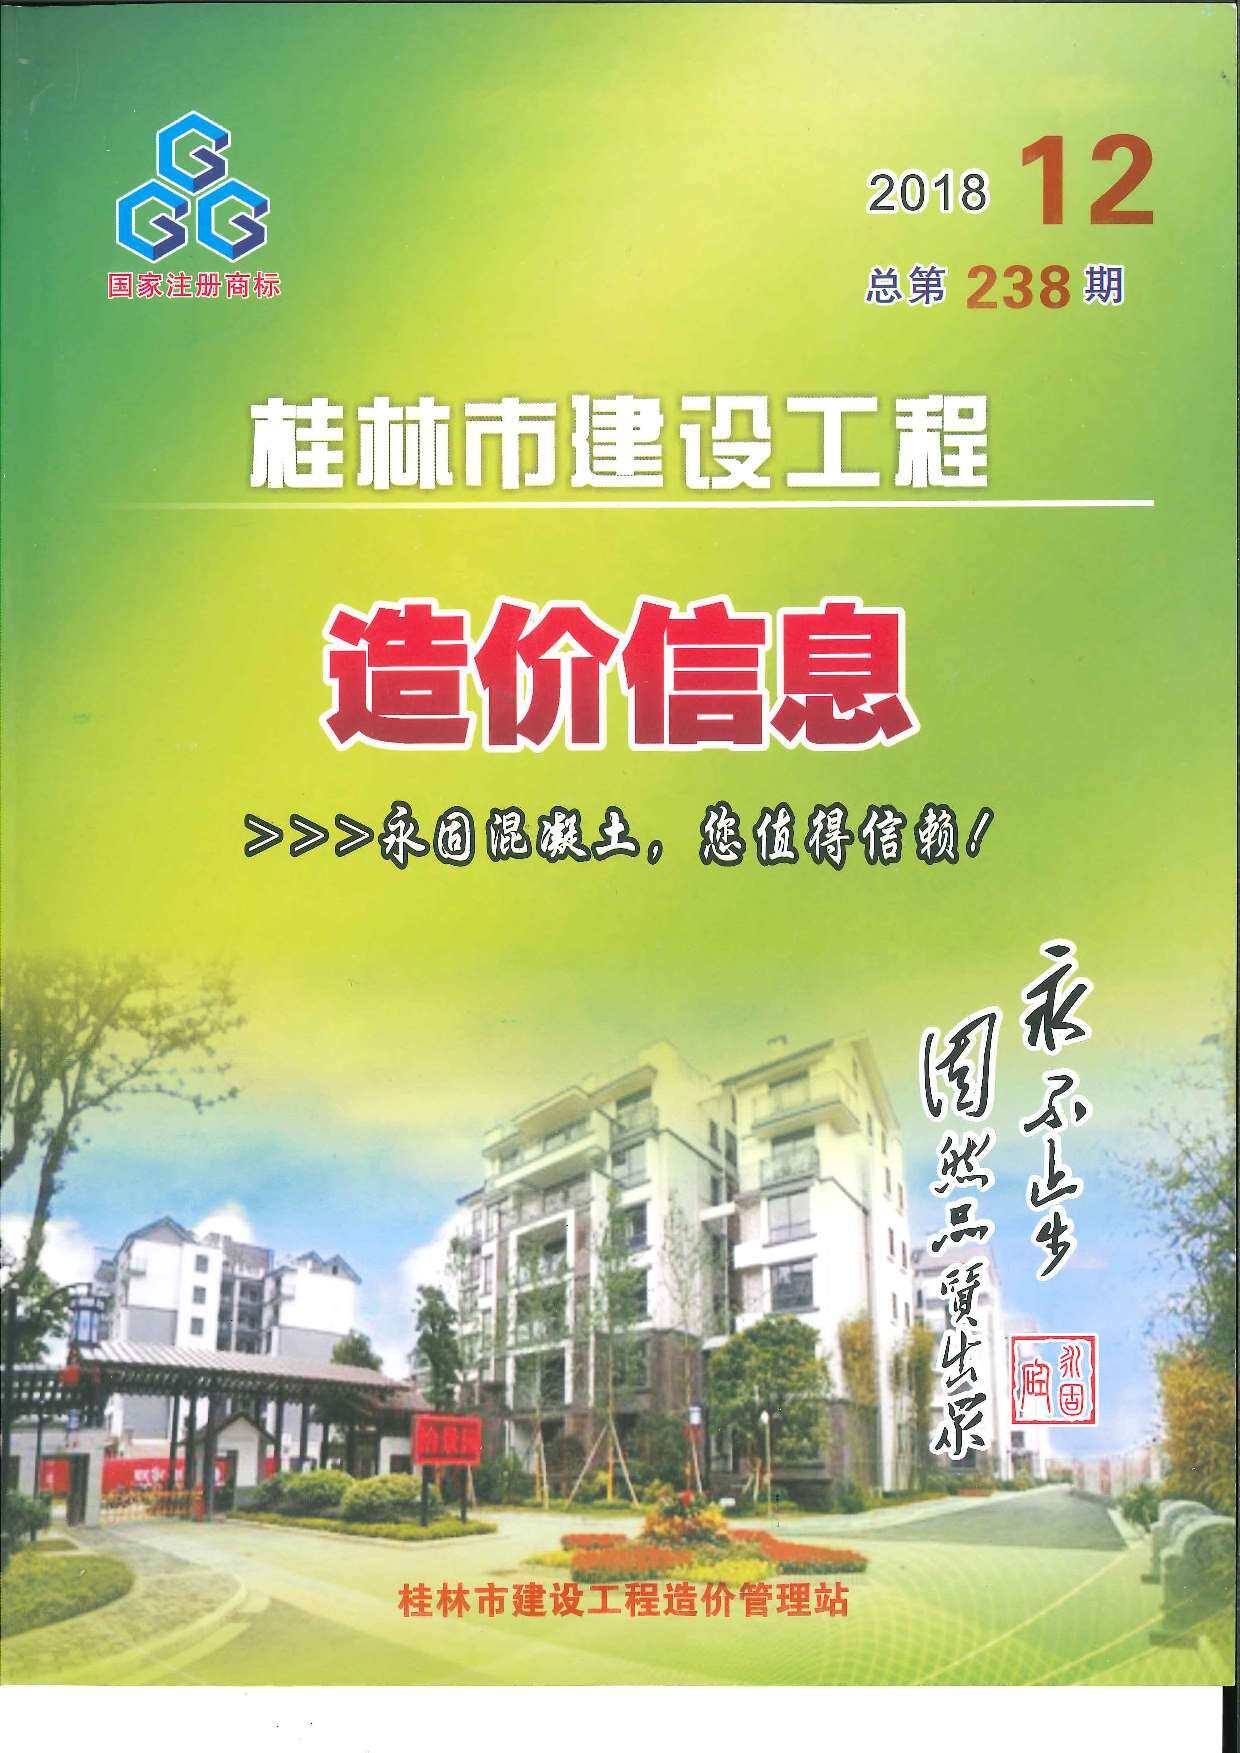 桂林市2018年12月工程造价信息期刊